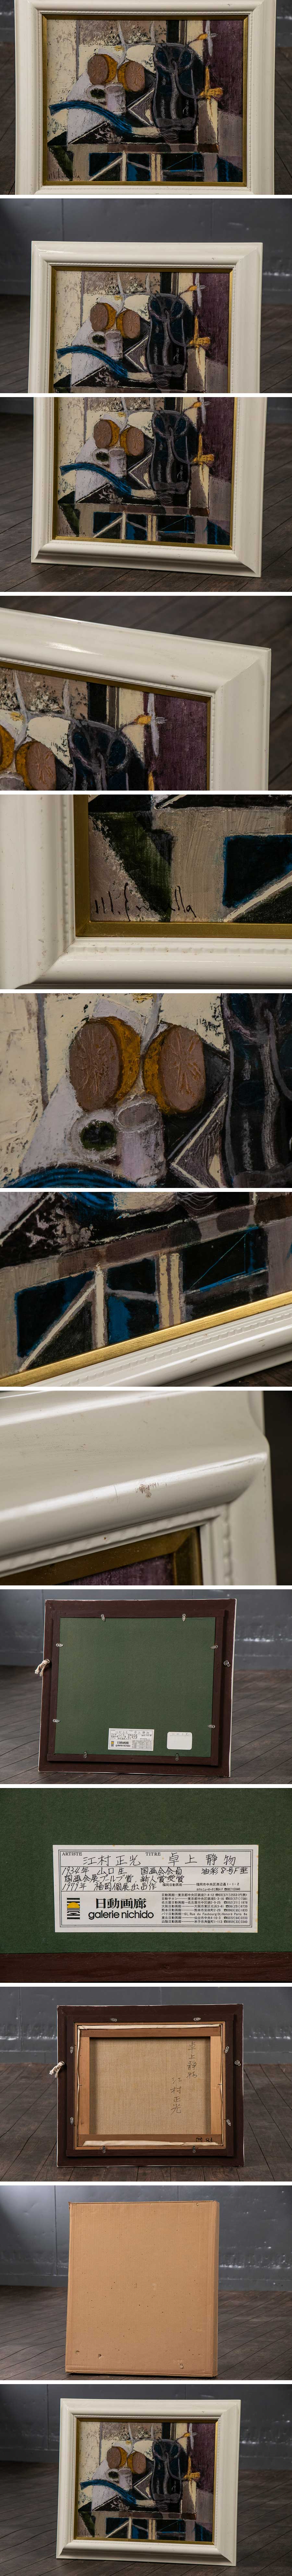 【本物格安】『 江村正光 （えむらまさみつ）「 卓上静物 」 油彩 キャンバス ガラス板 額装 紙箱 S606 』絵画 インテリア 芸術 美術 静物画 静物画